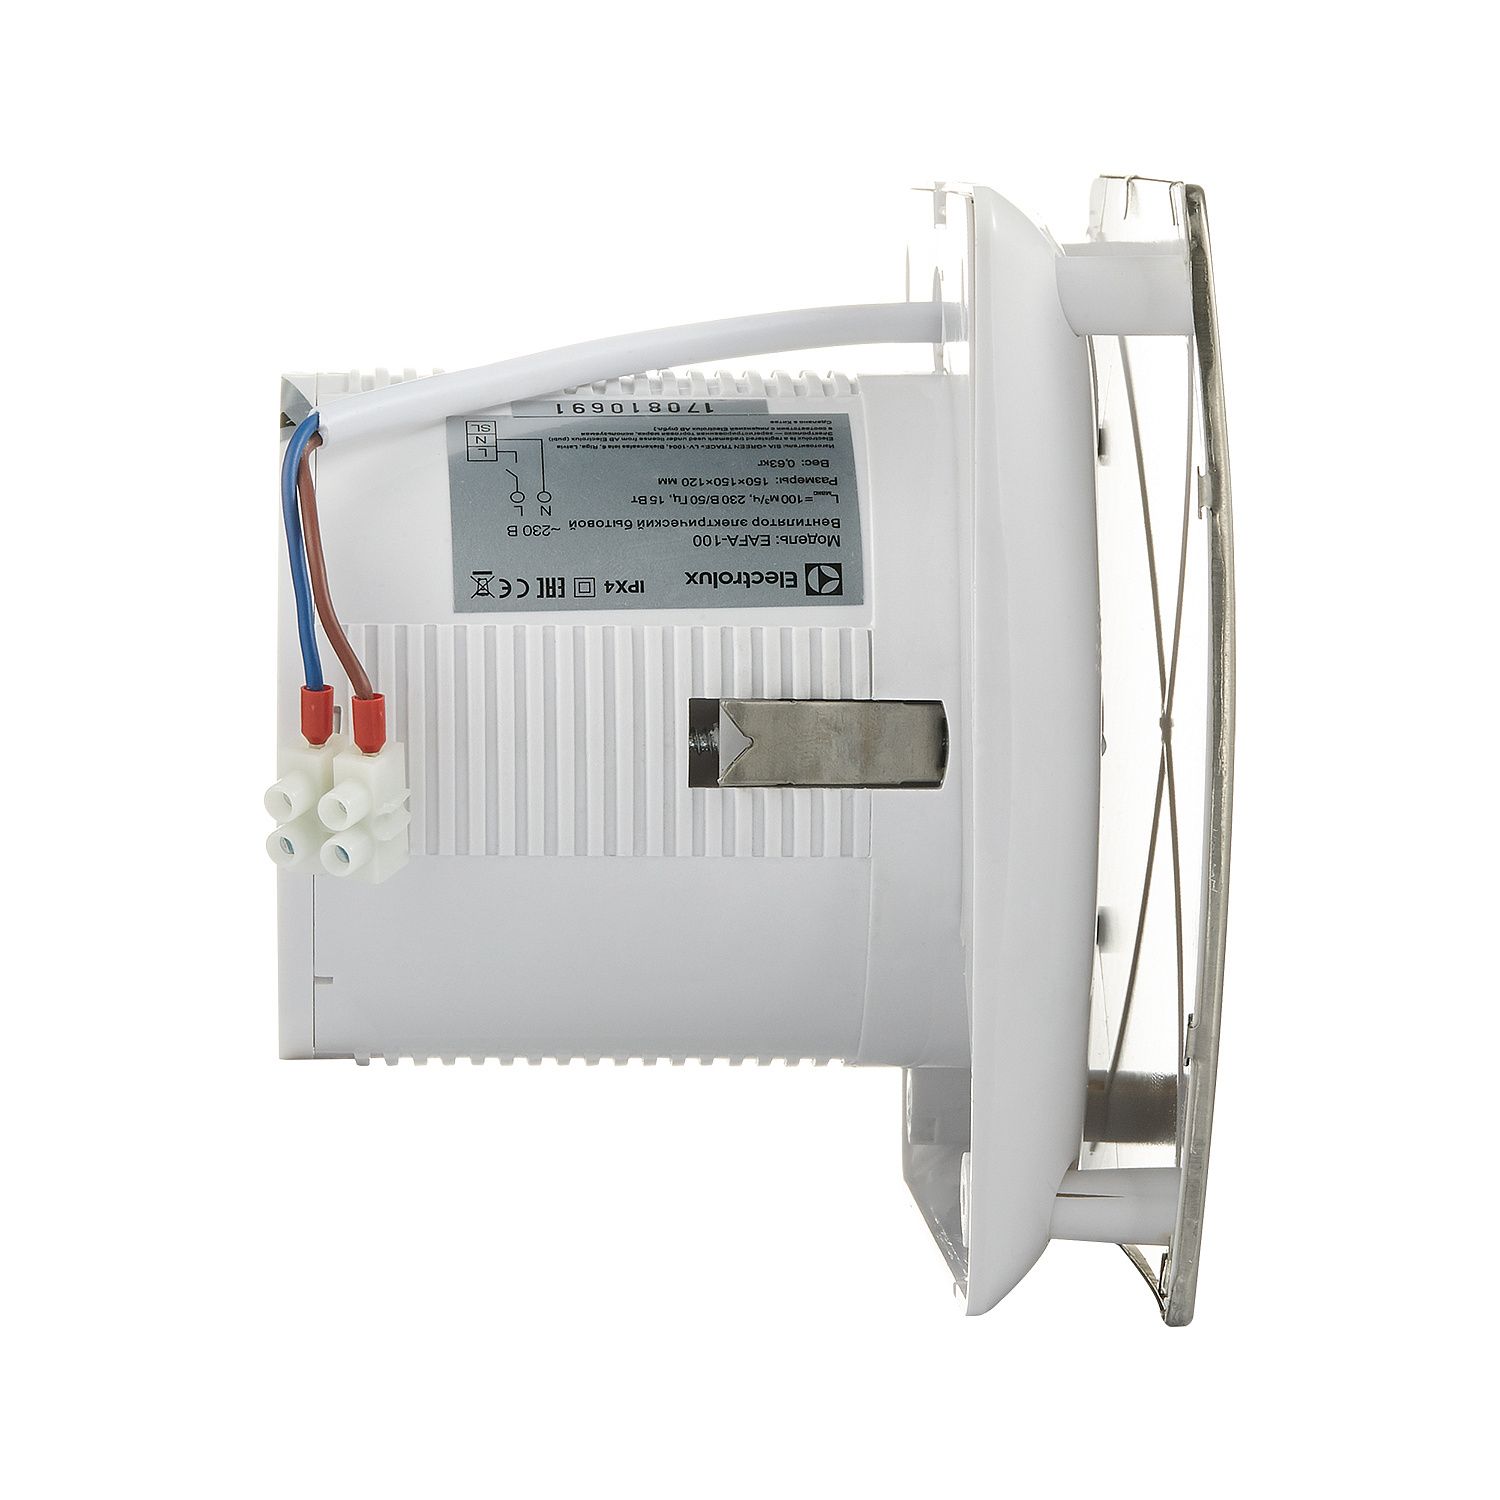 Вентилятор вытяжной ELECTROLUX Argentum EAFA-100TH обратный клапан, таймер и гигростат фото5